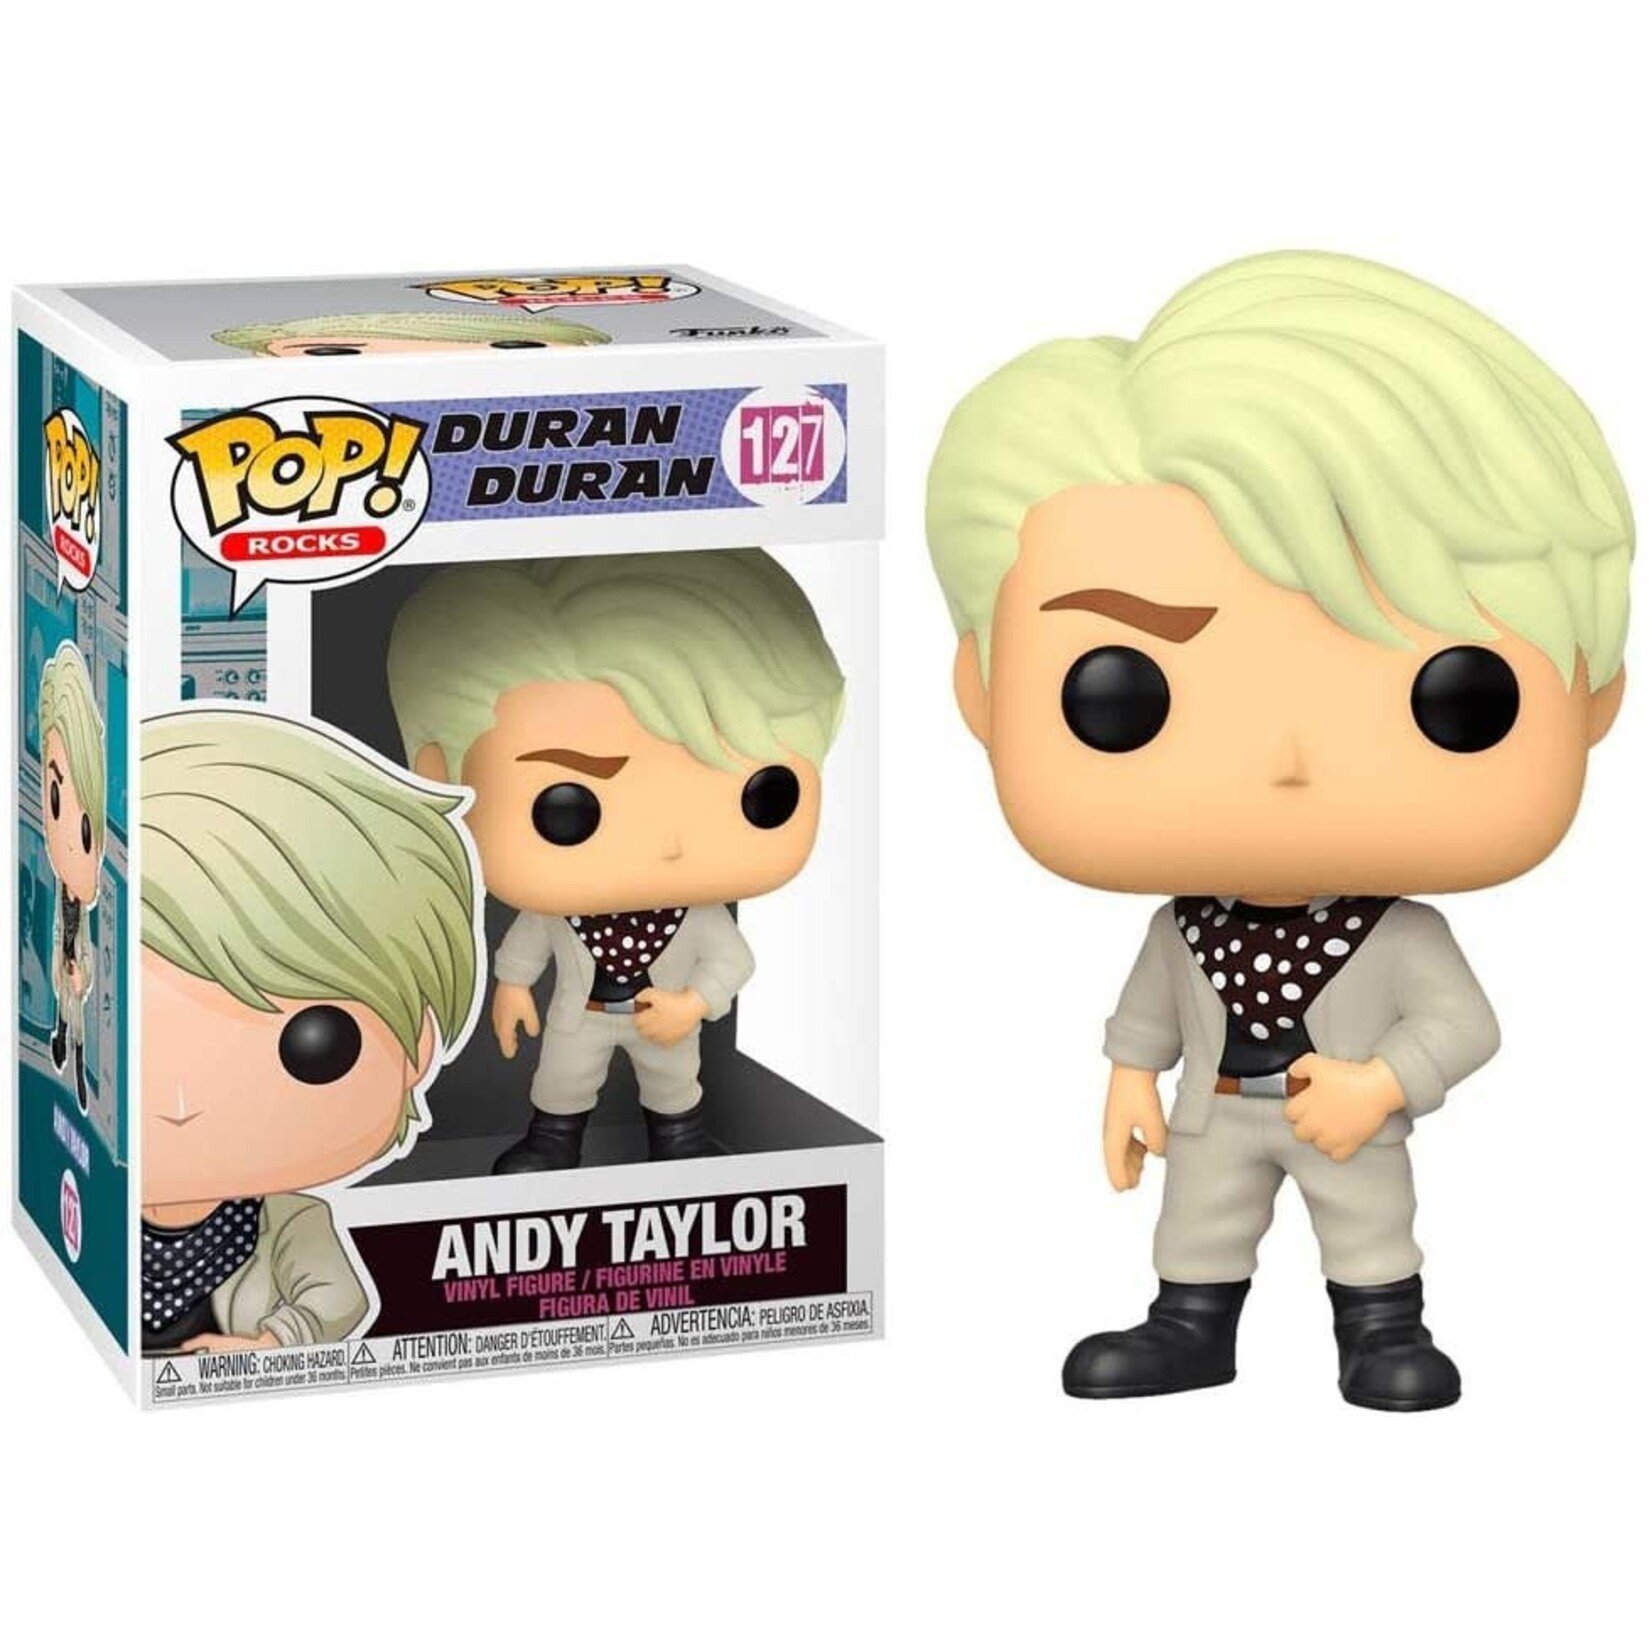 Pop! Rocks 127 - Duran Duran: Andy Taylor